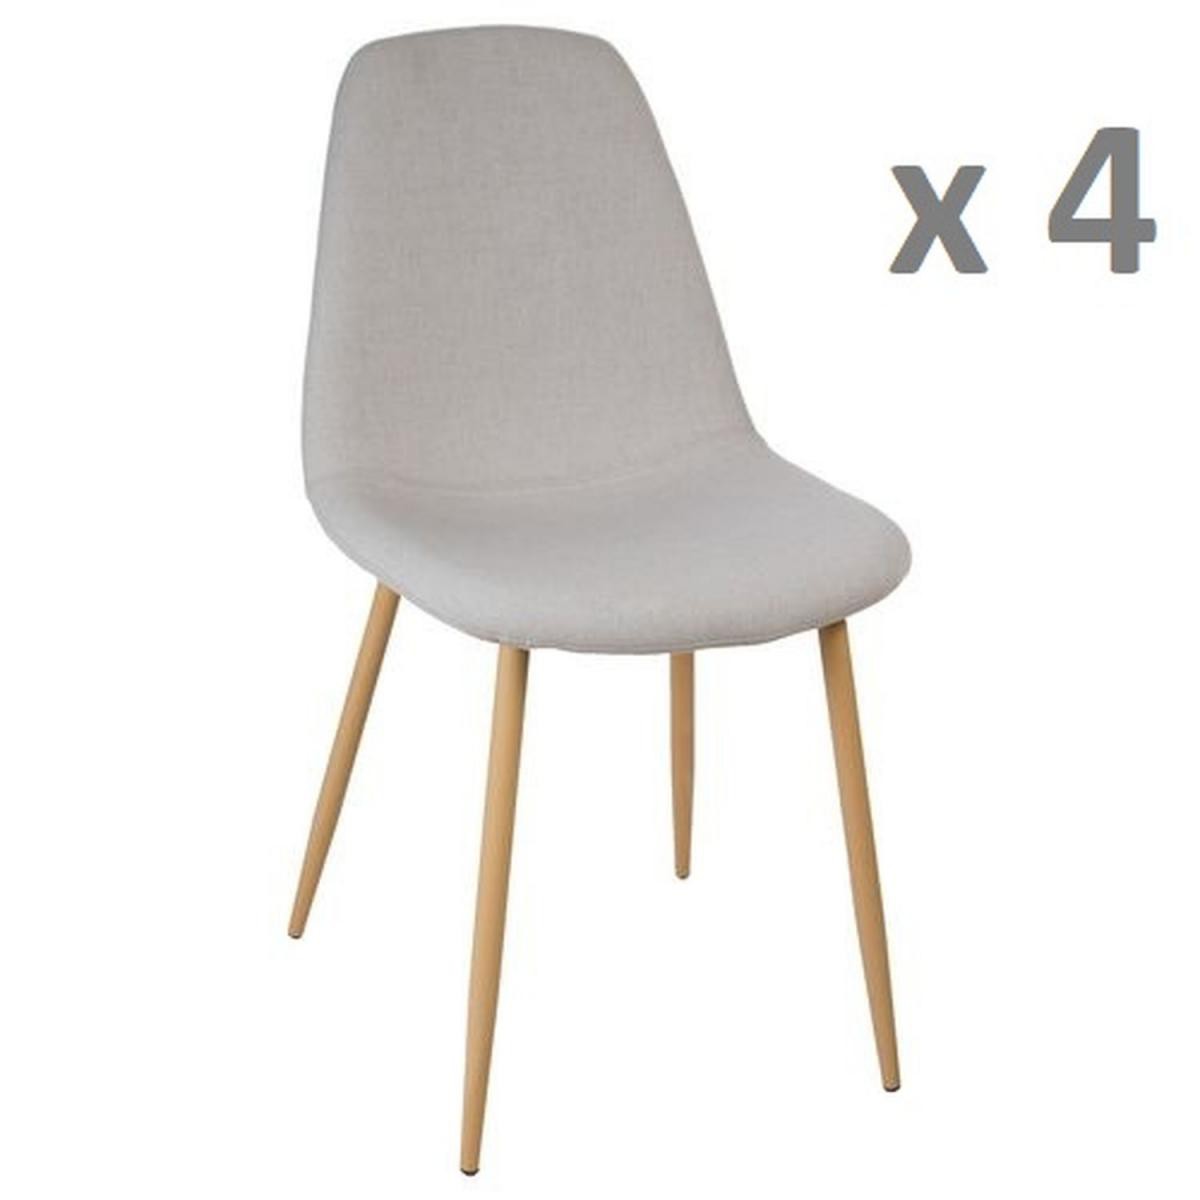 Atmosphera, Createur D'Interieur - Lot de 4 - Chaise design scandinave Roka - Gris clair - Chaises